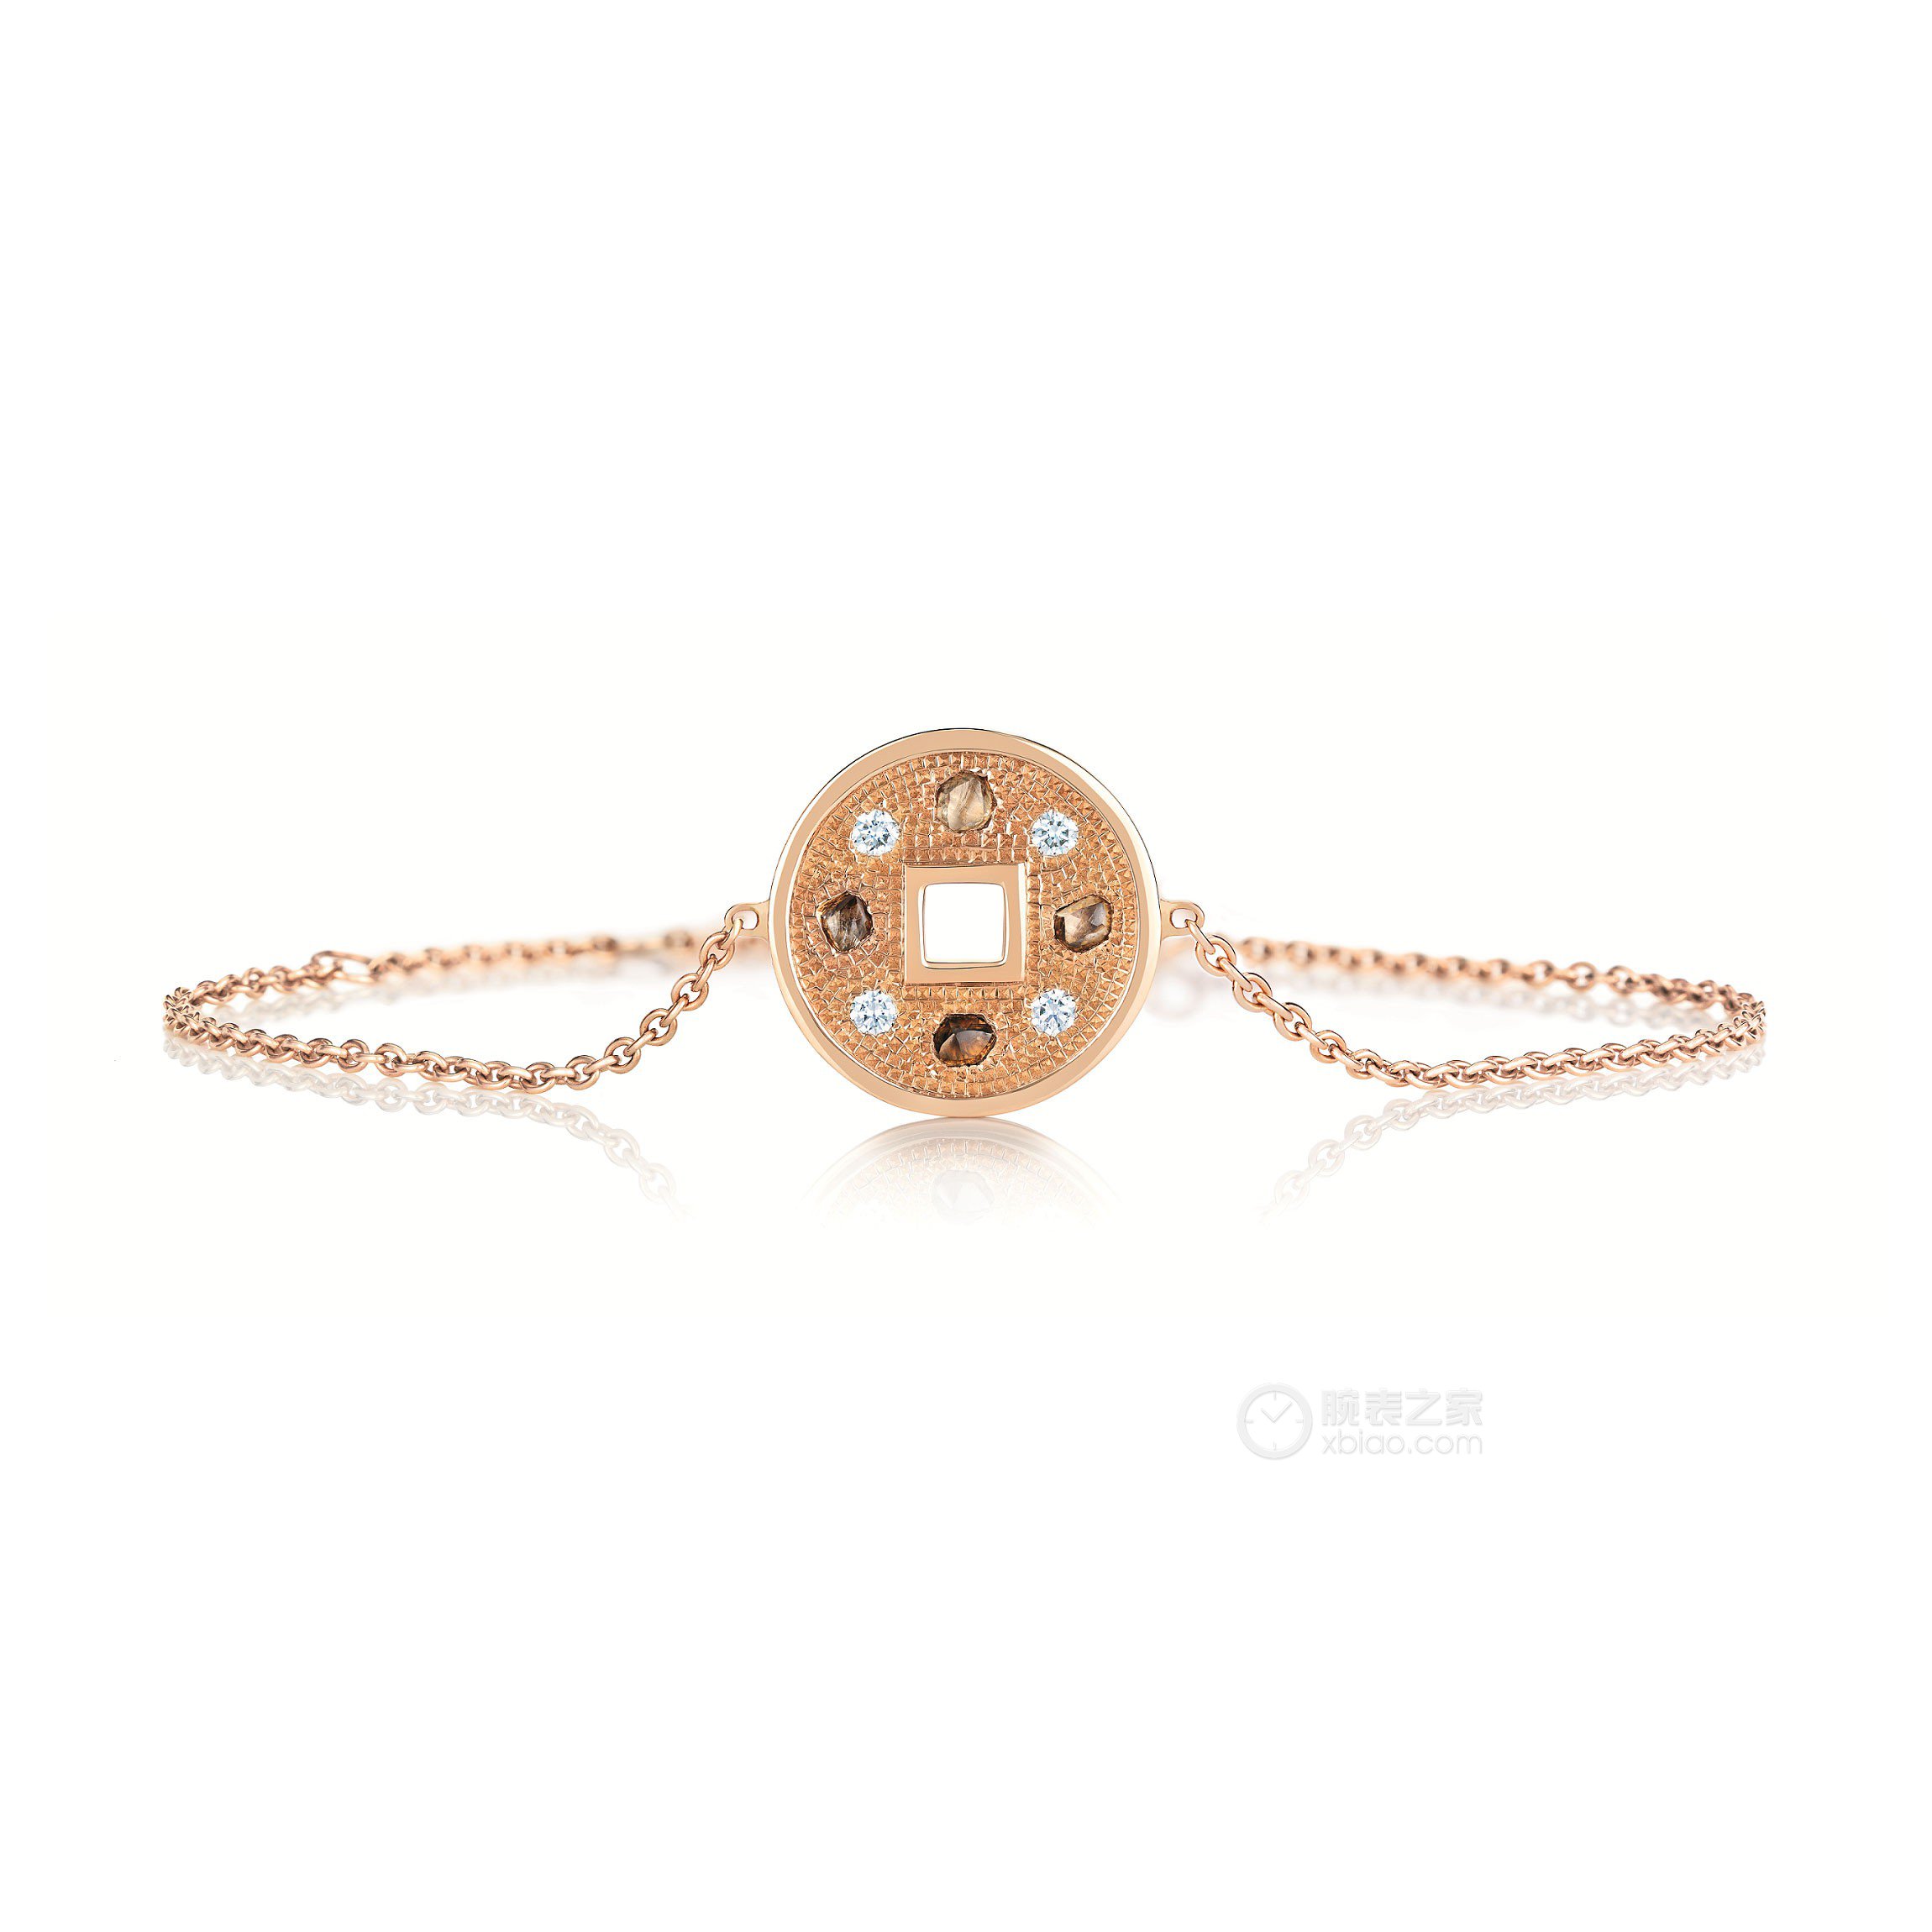 高清图|宝格丽DIVAS' DREAM玫瑰金密镶钻石手链手镯/手链/手串图片1|腕表之家-珠宝